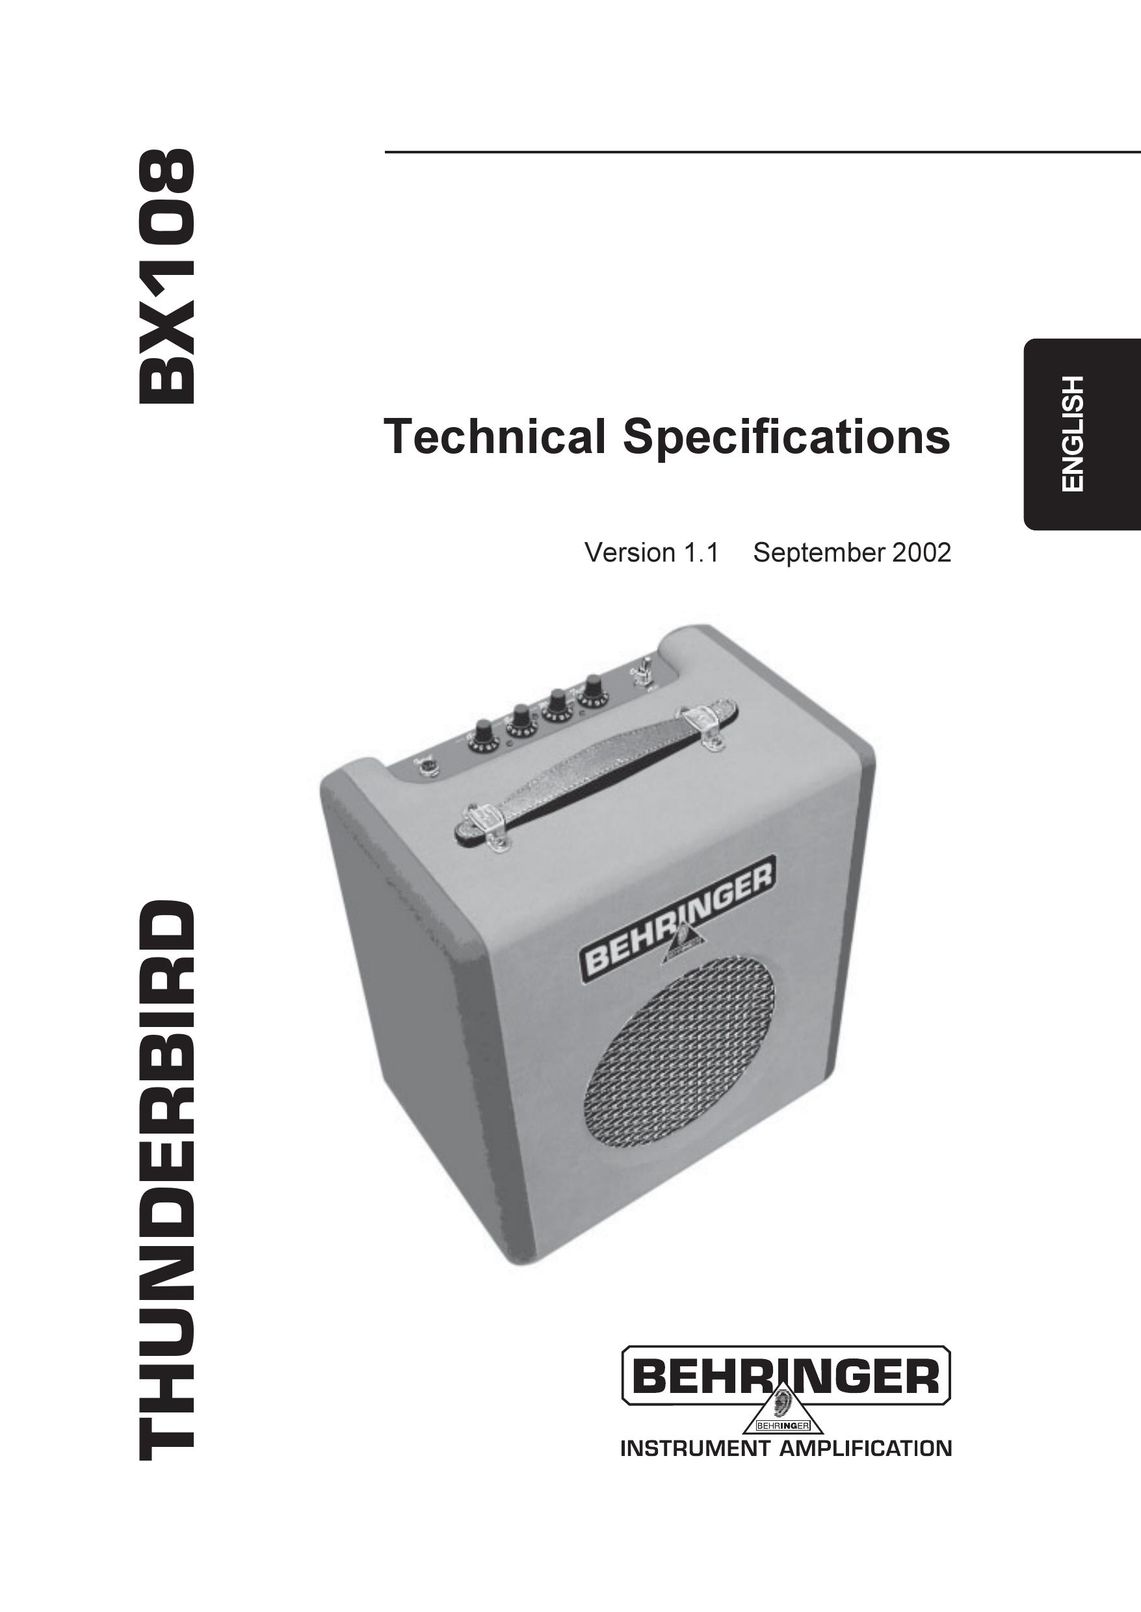 Behringer BX108 Car Amplifier User Manual